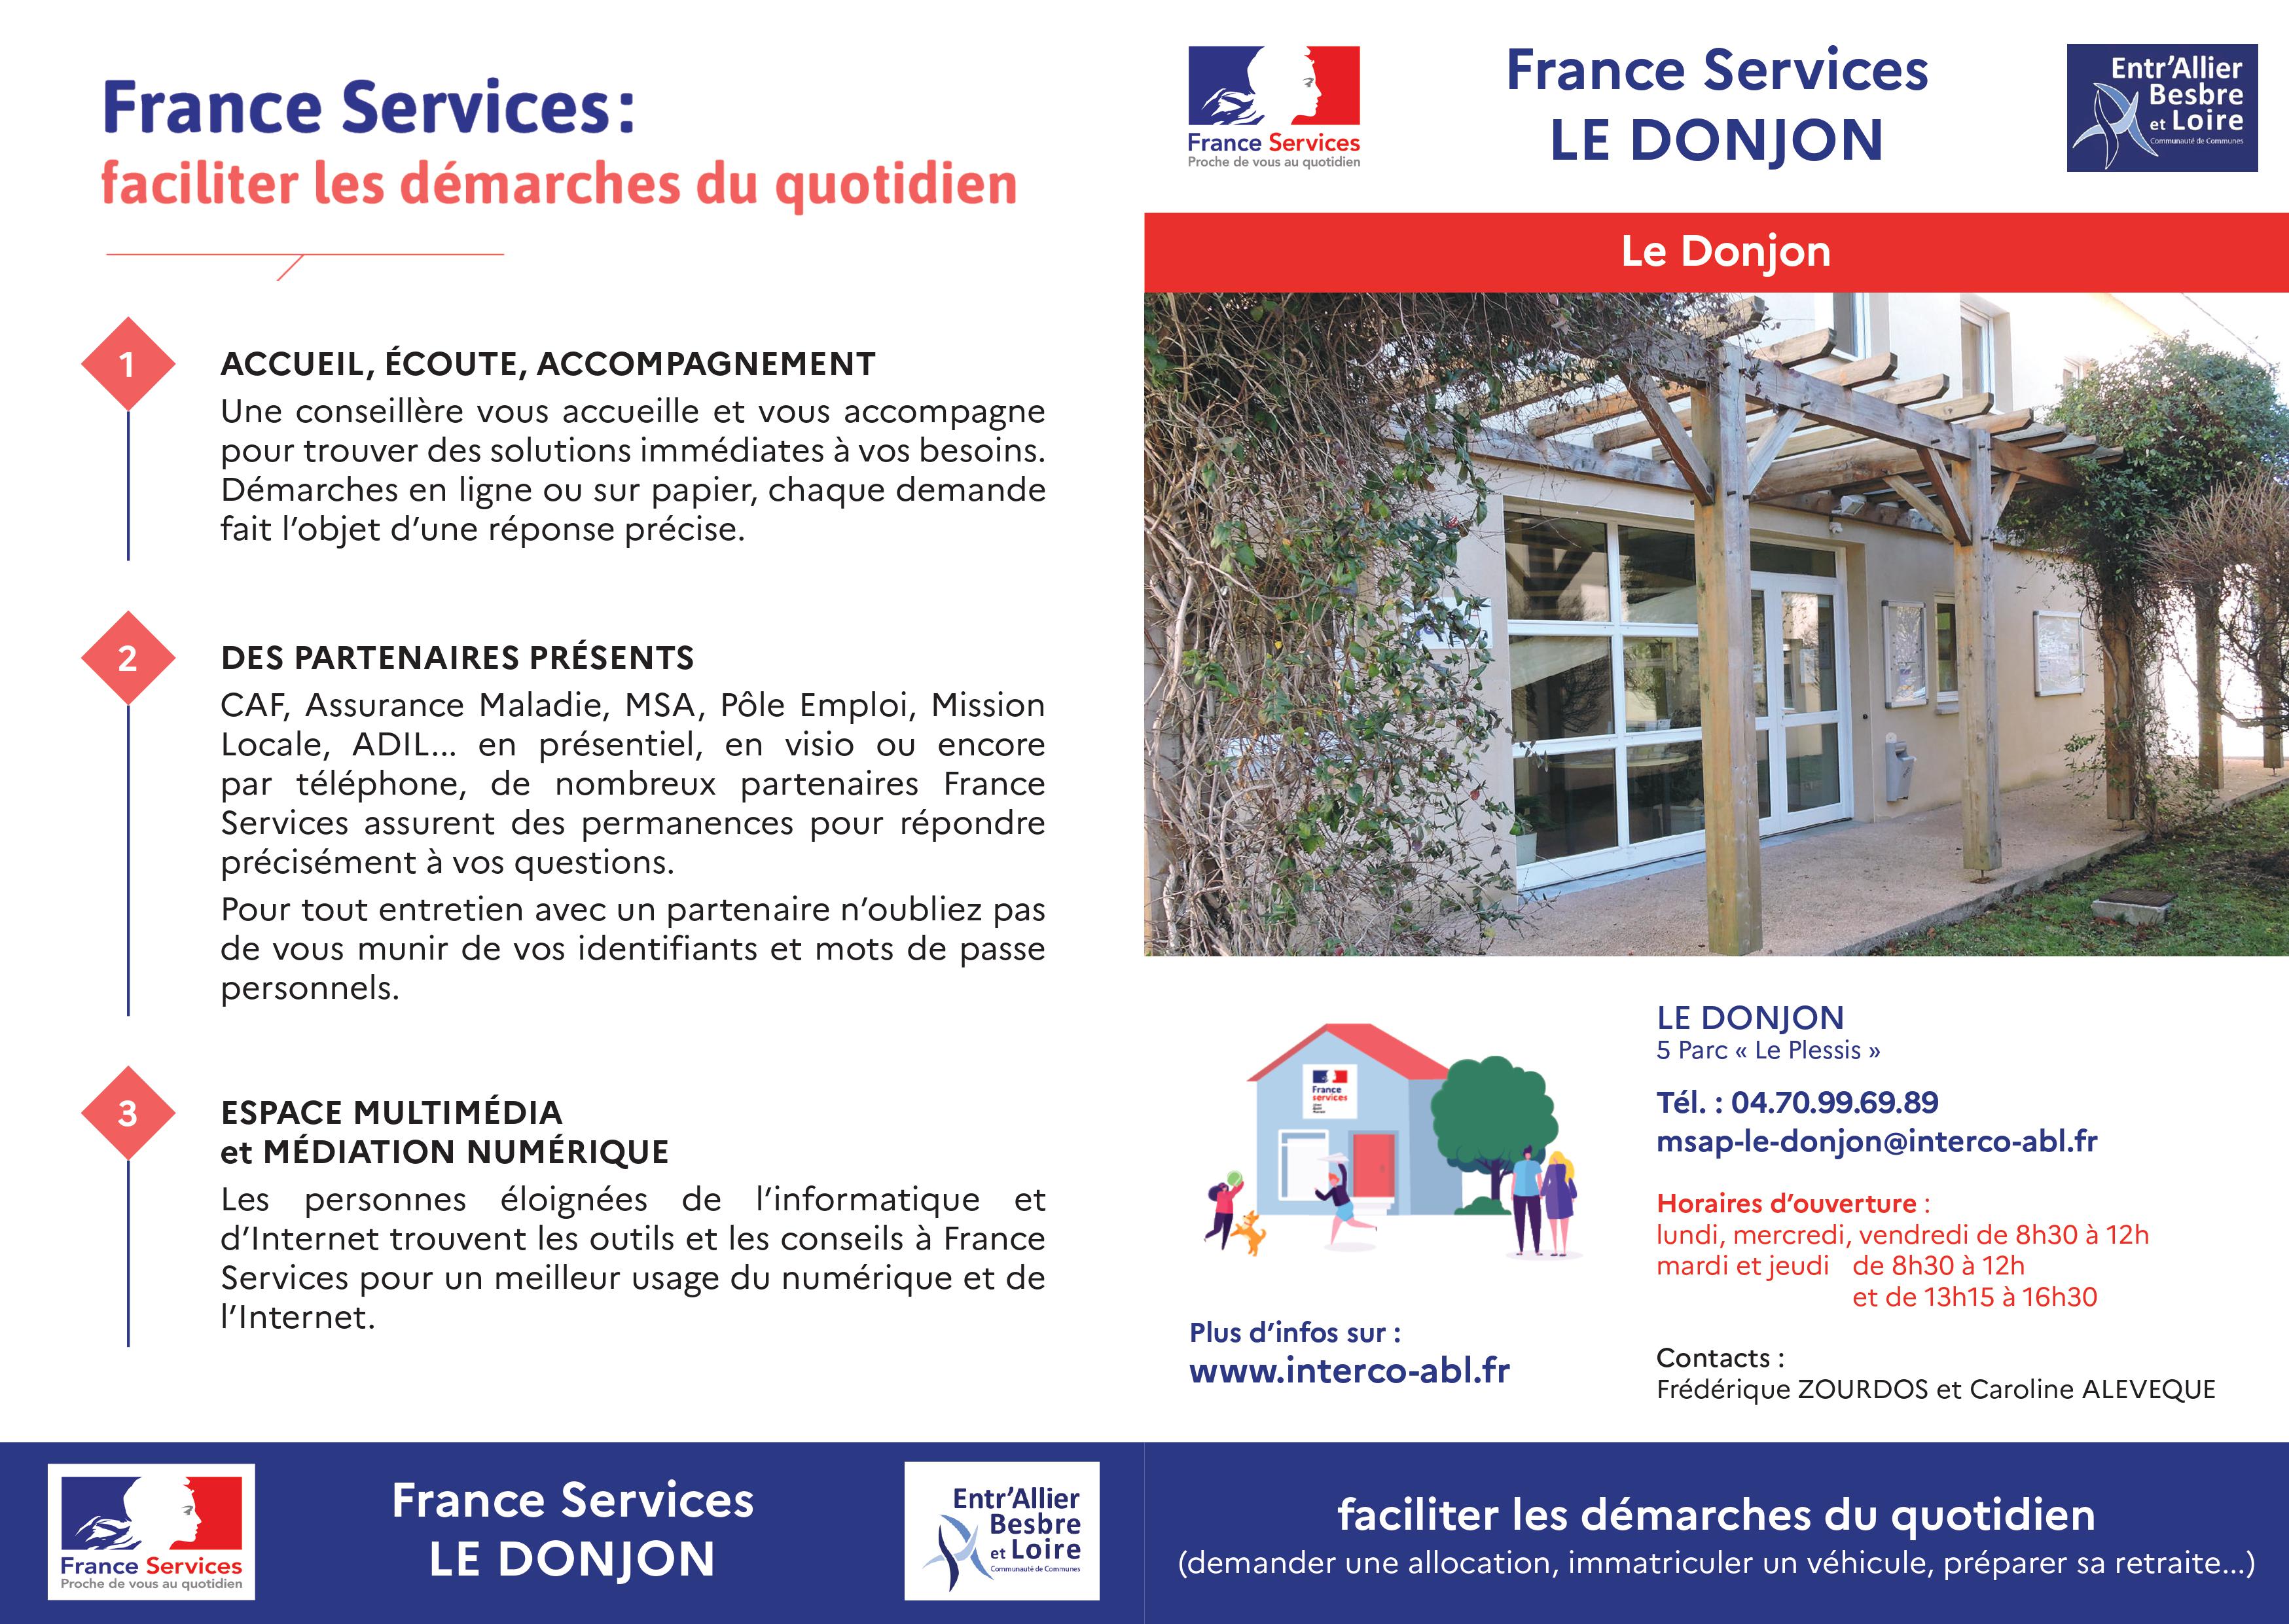 Maison des Servicesq Publics labellisée France Services